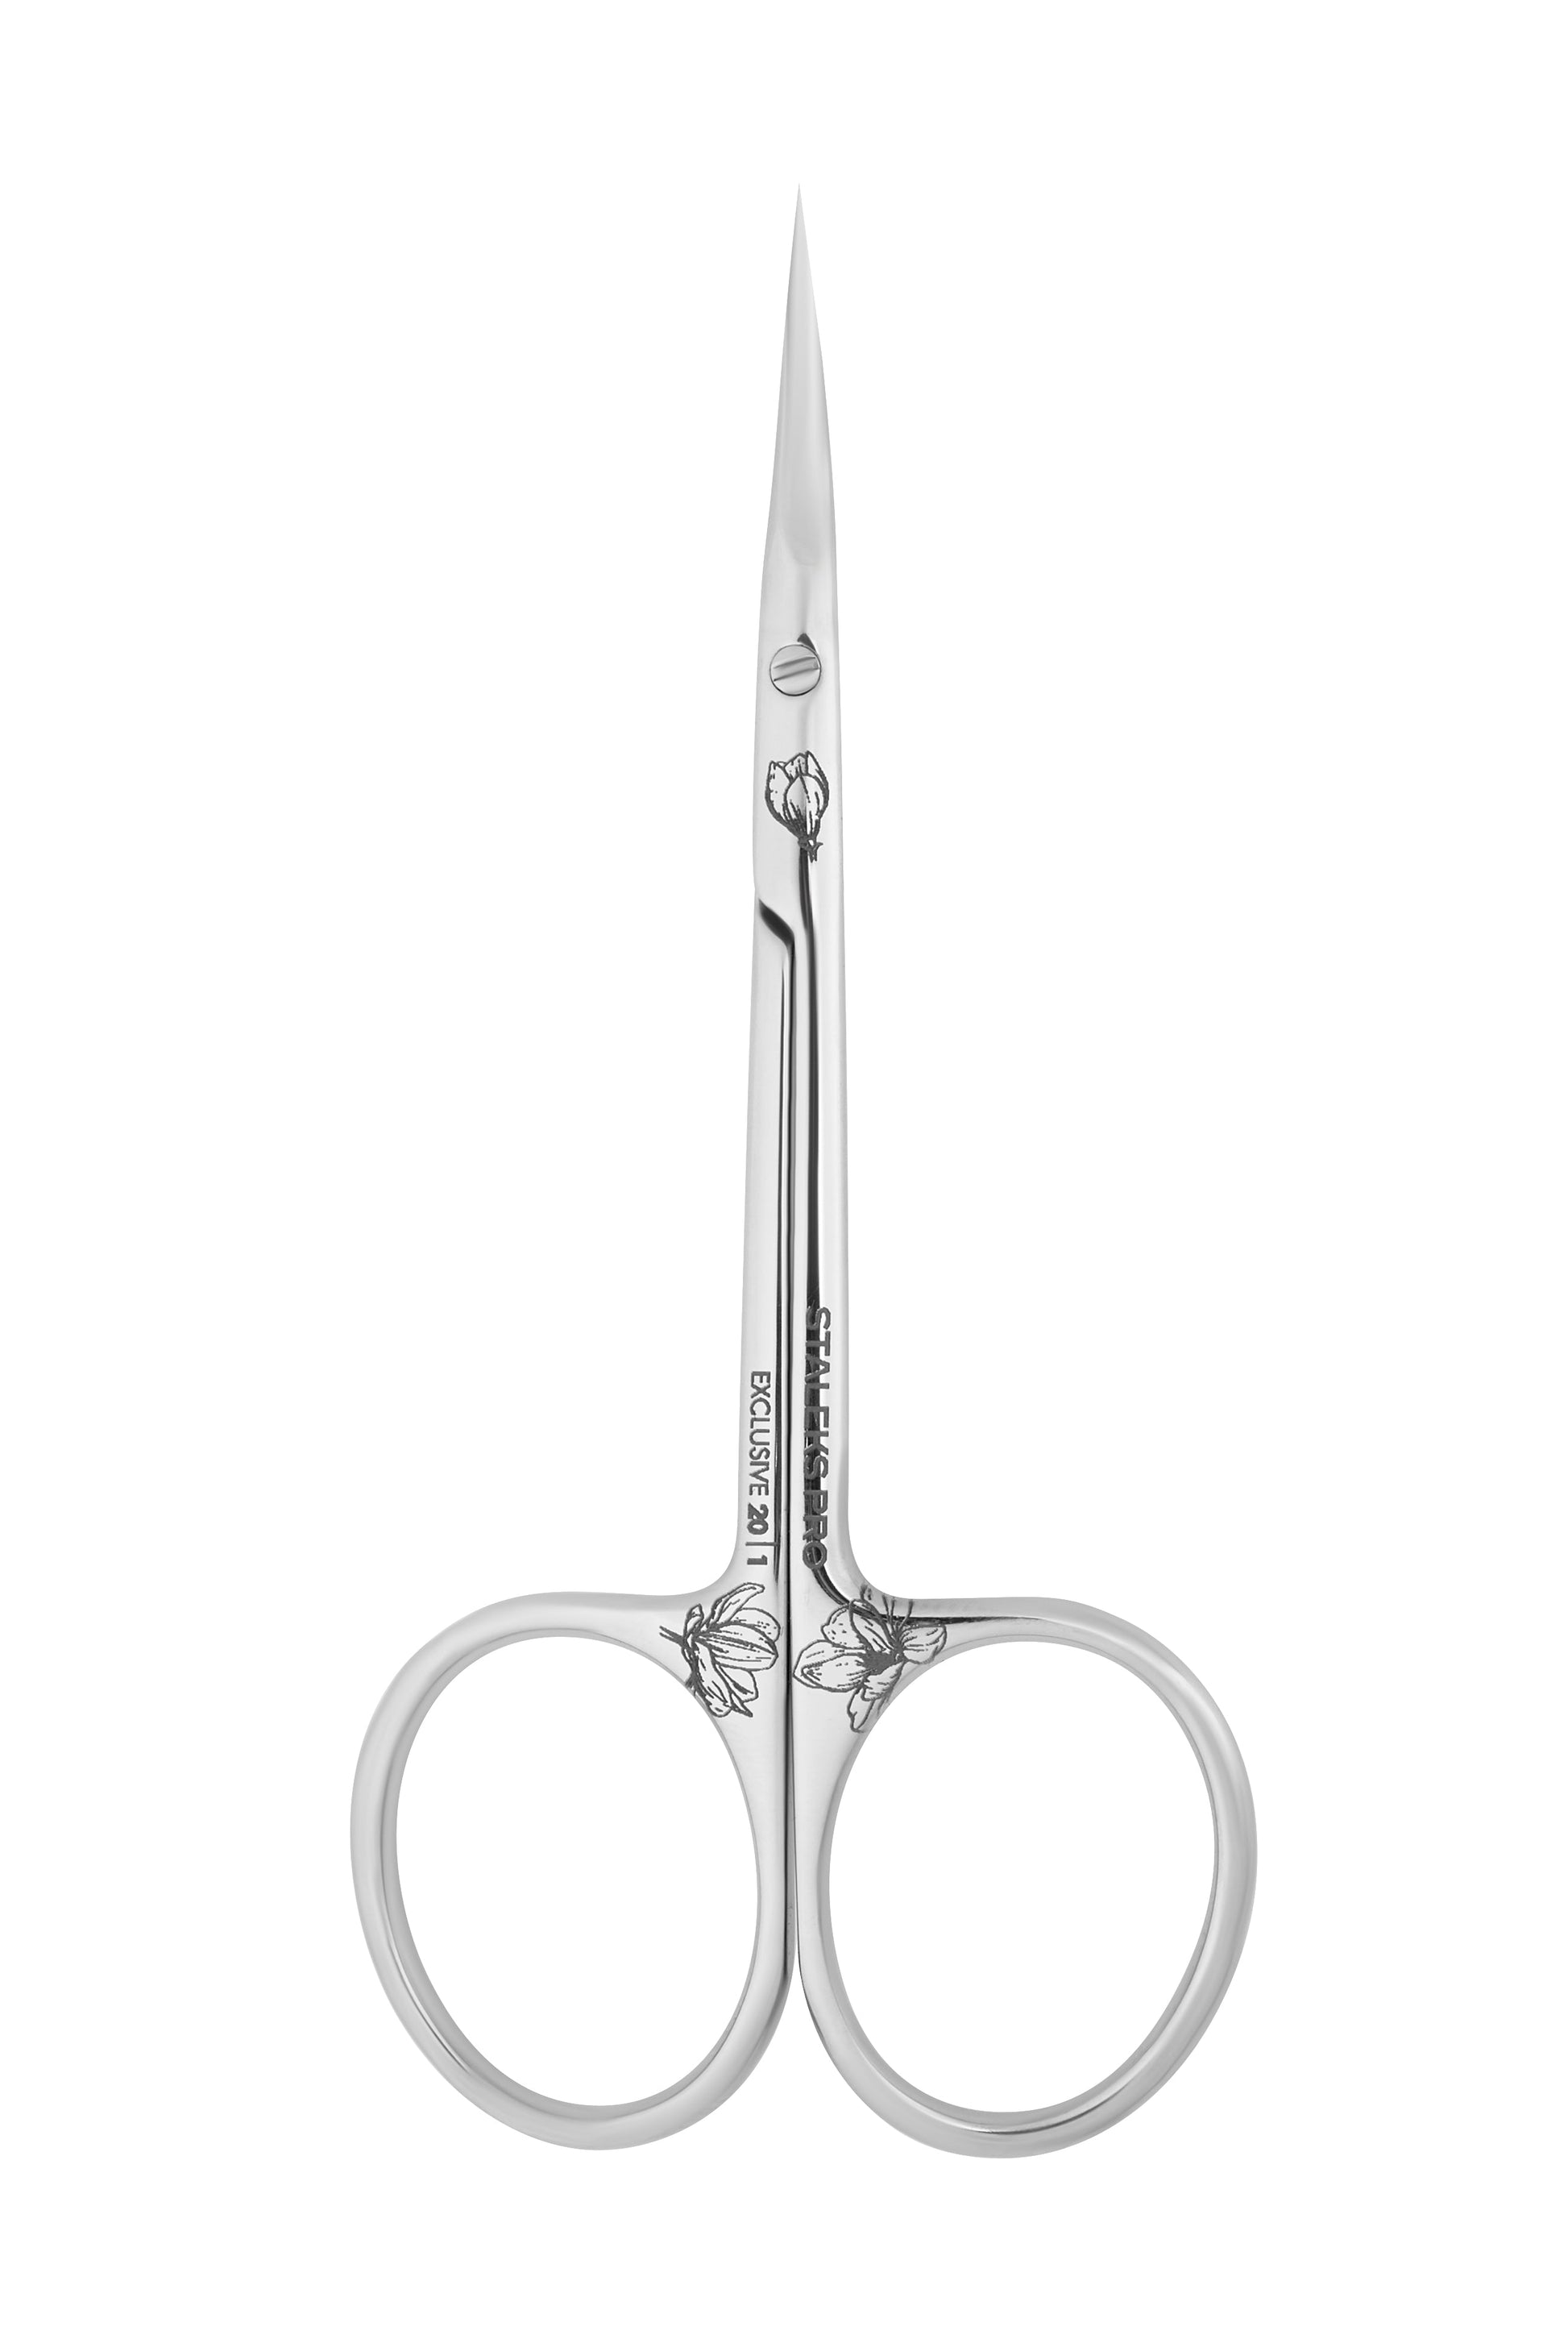 STALEKS-Cuticle scissors EXCLUSIVE 20 TYPE 1 magnolia Professional-3